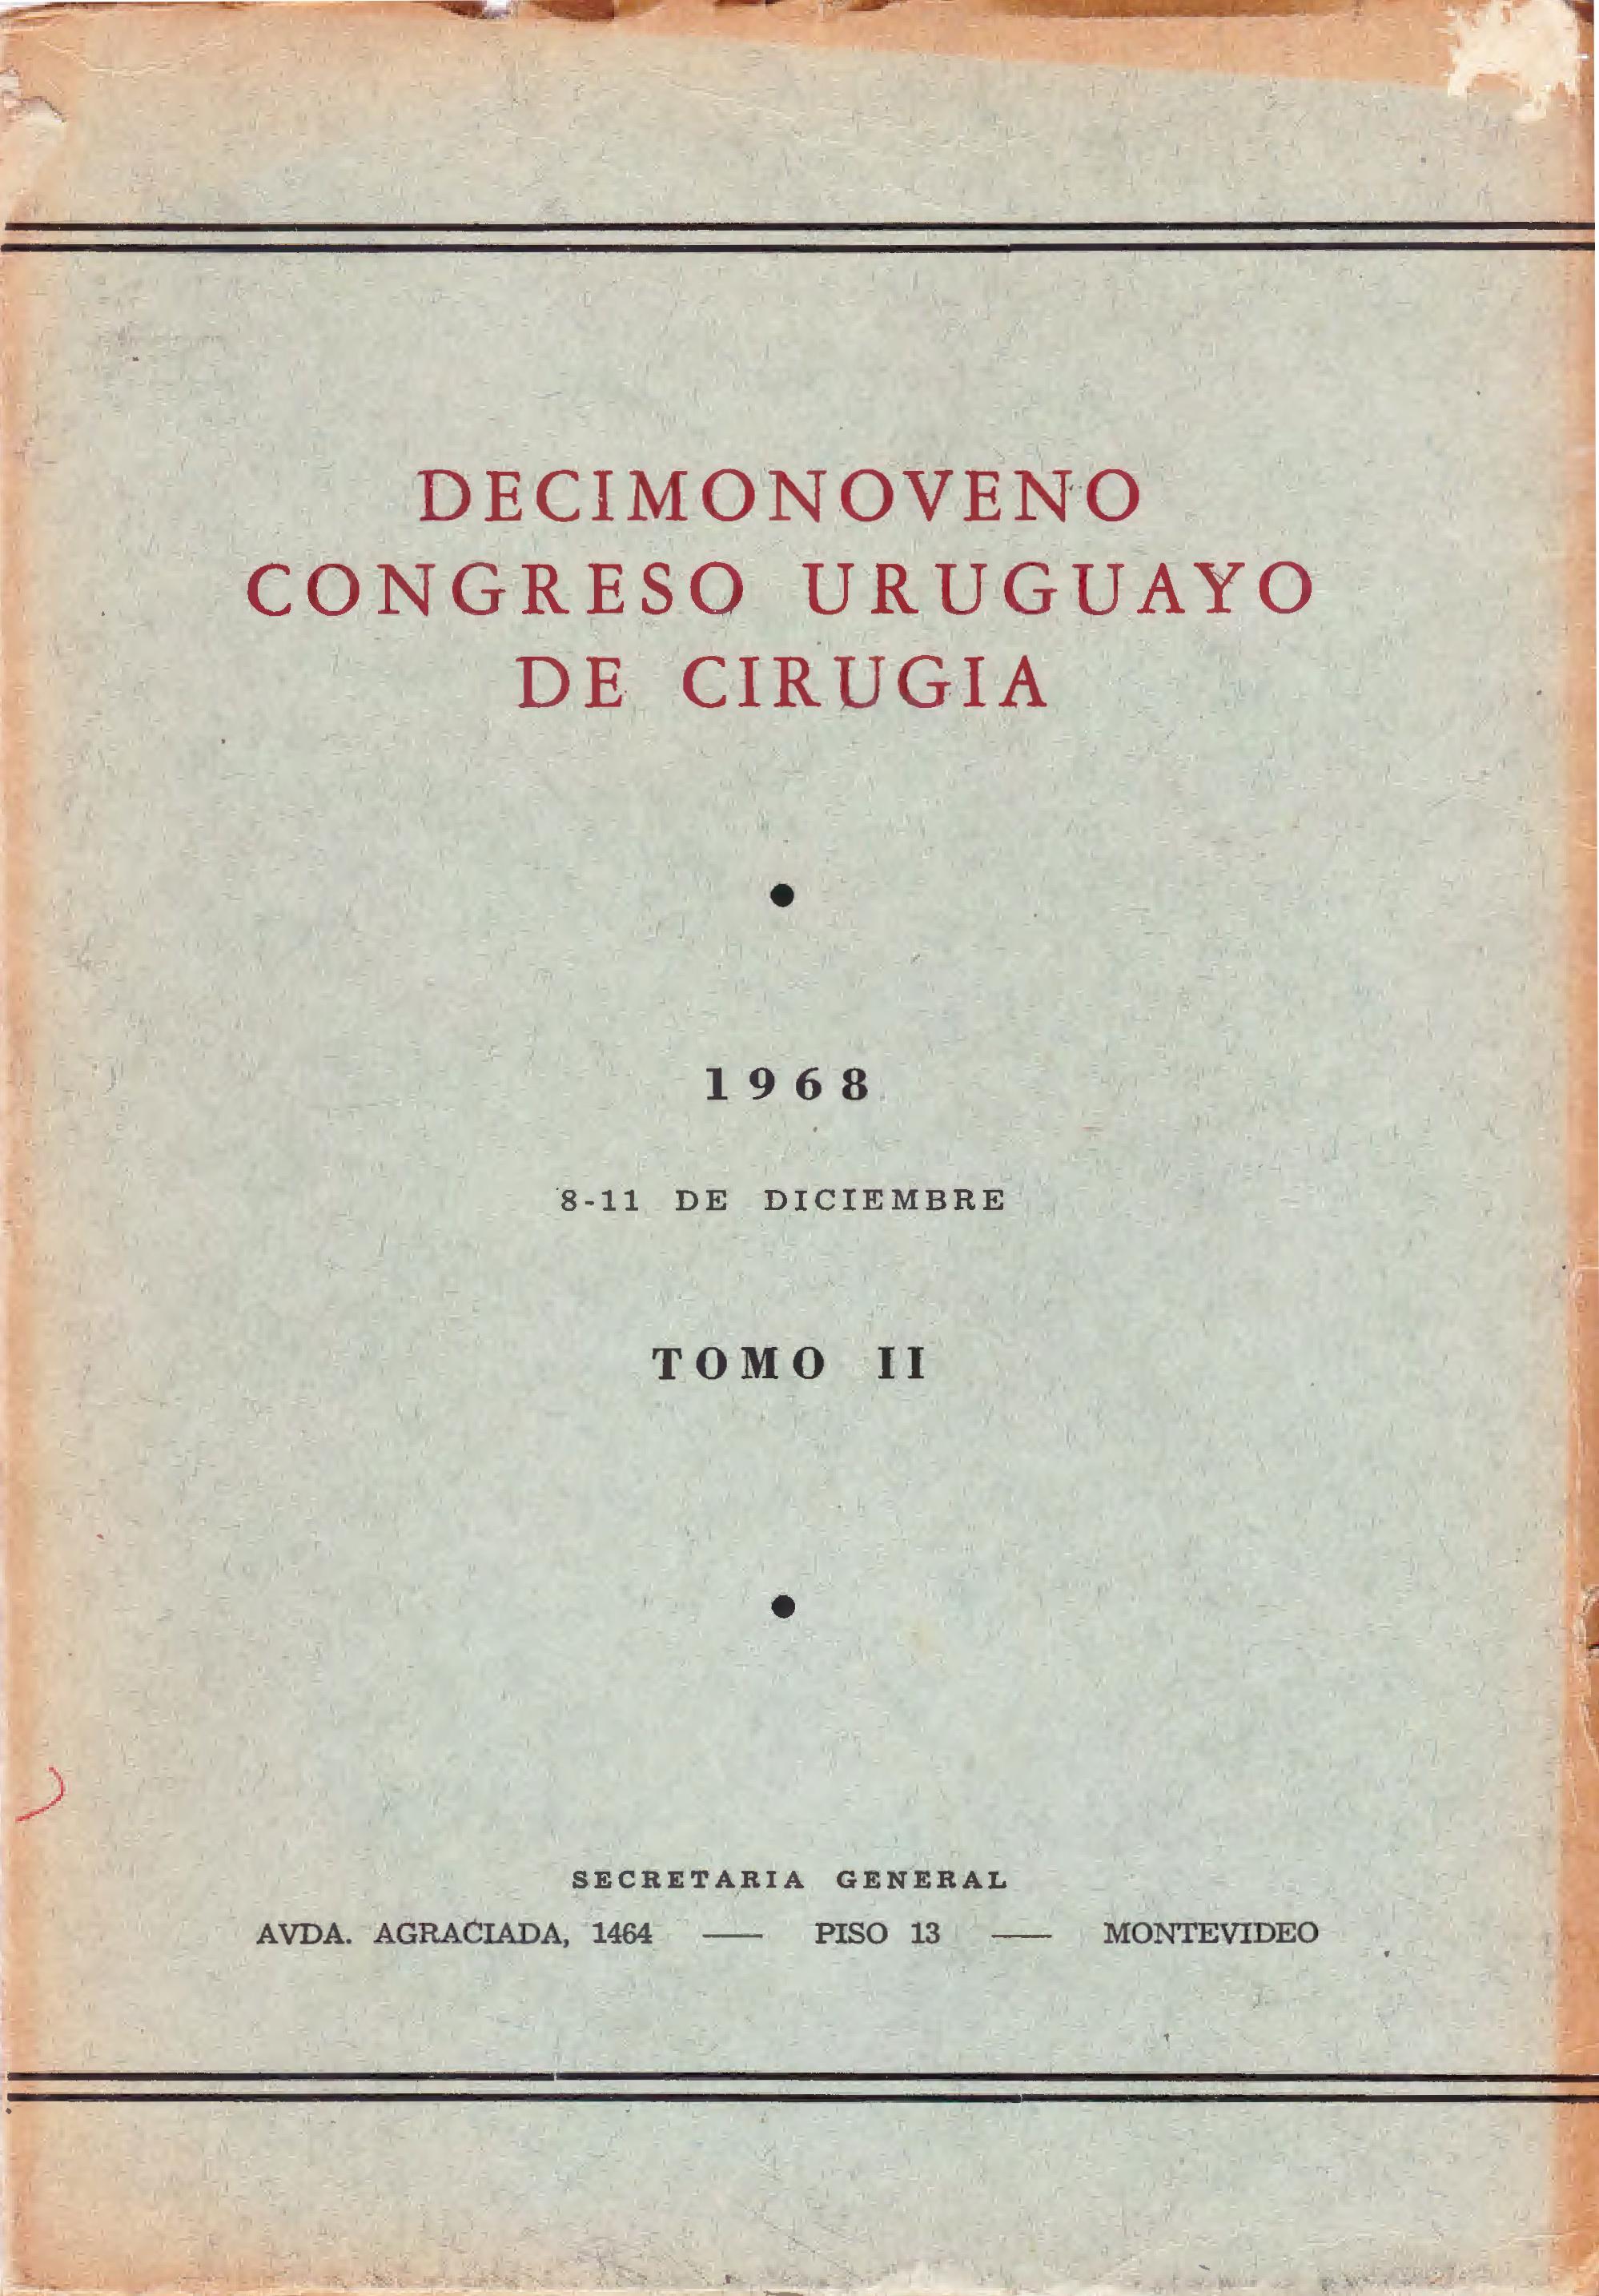 					Ver Núm. 2 (1968): Congresos Uruguayos de Cirugía
				